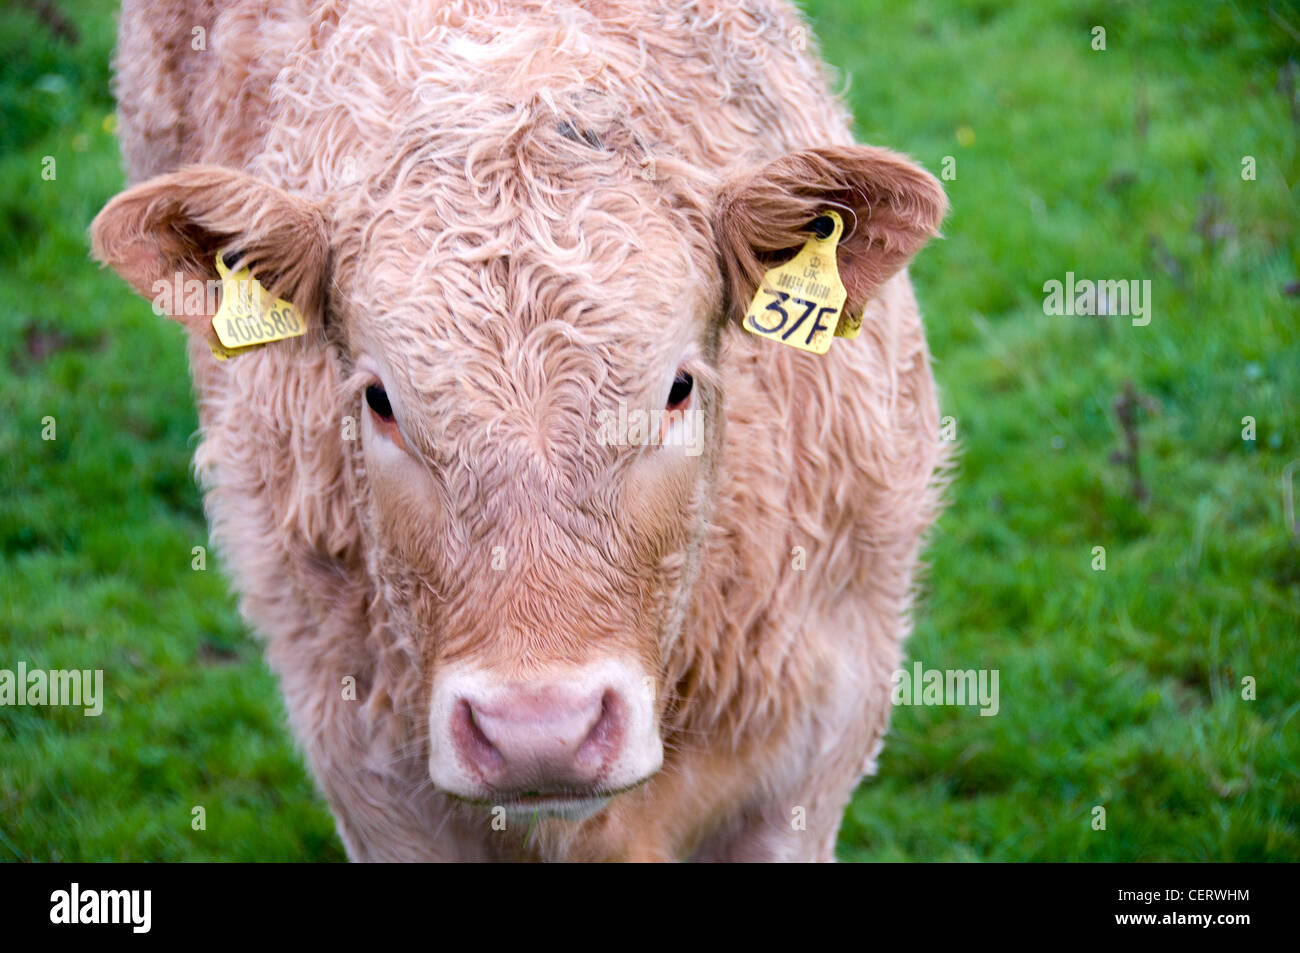 Vache avec des étiquettes d'identification dans les oreilles Banque D'Images